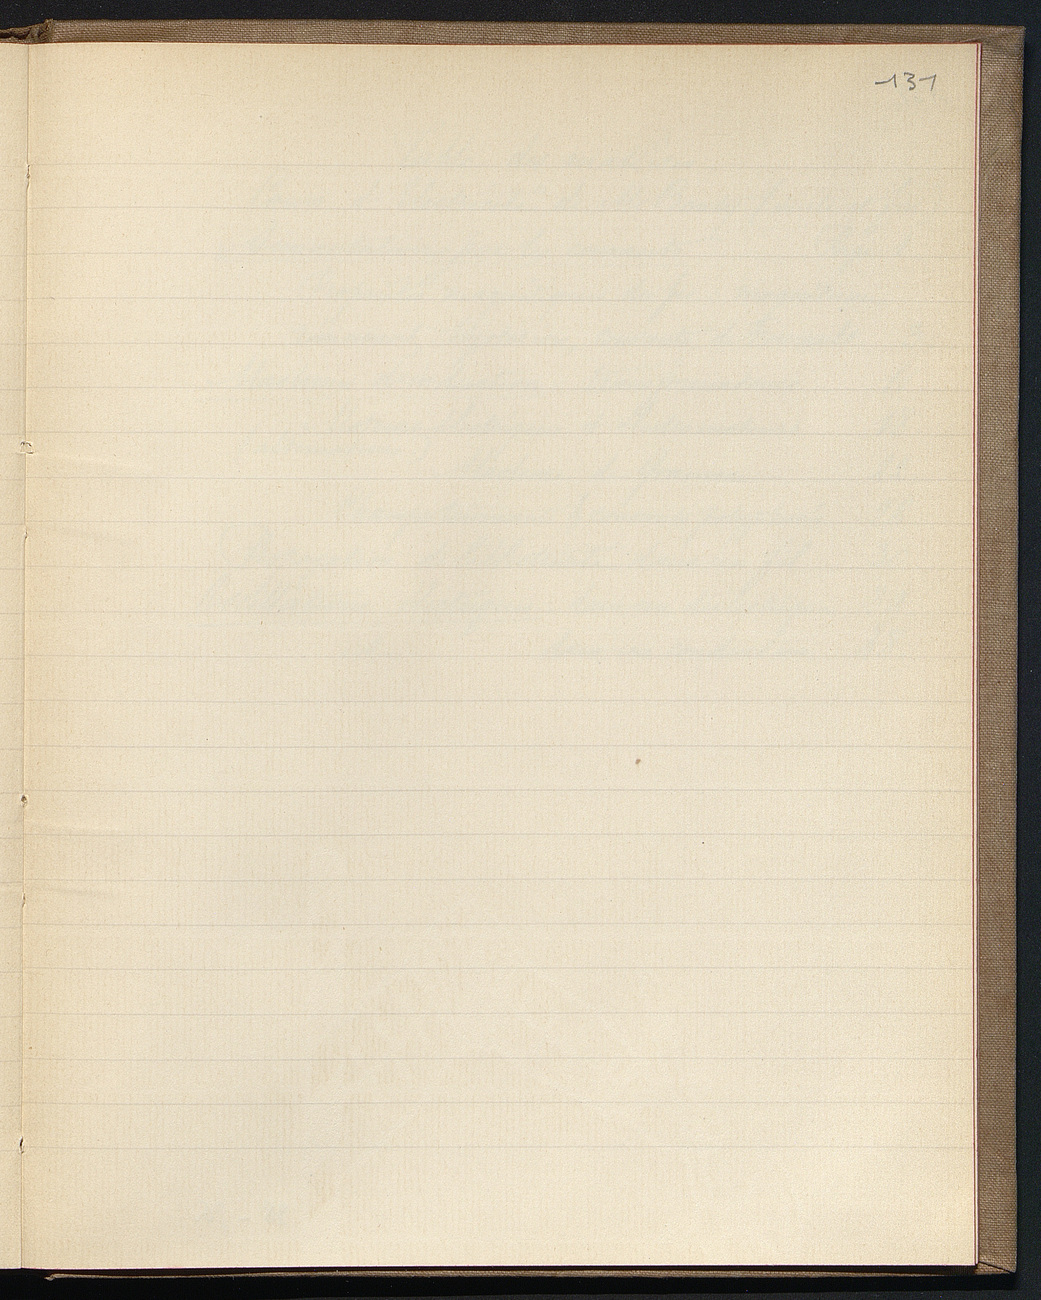 [folio 131 : foliotation de la main de bibliothécaire][page blanche]